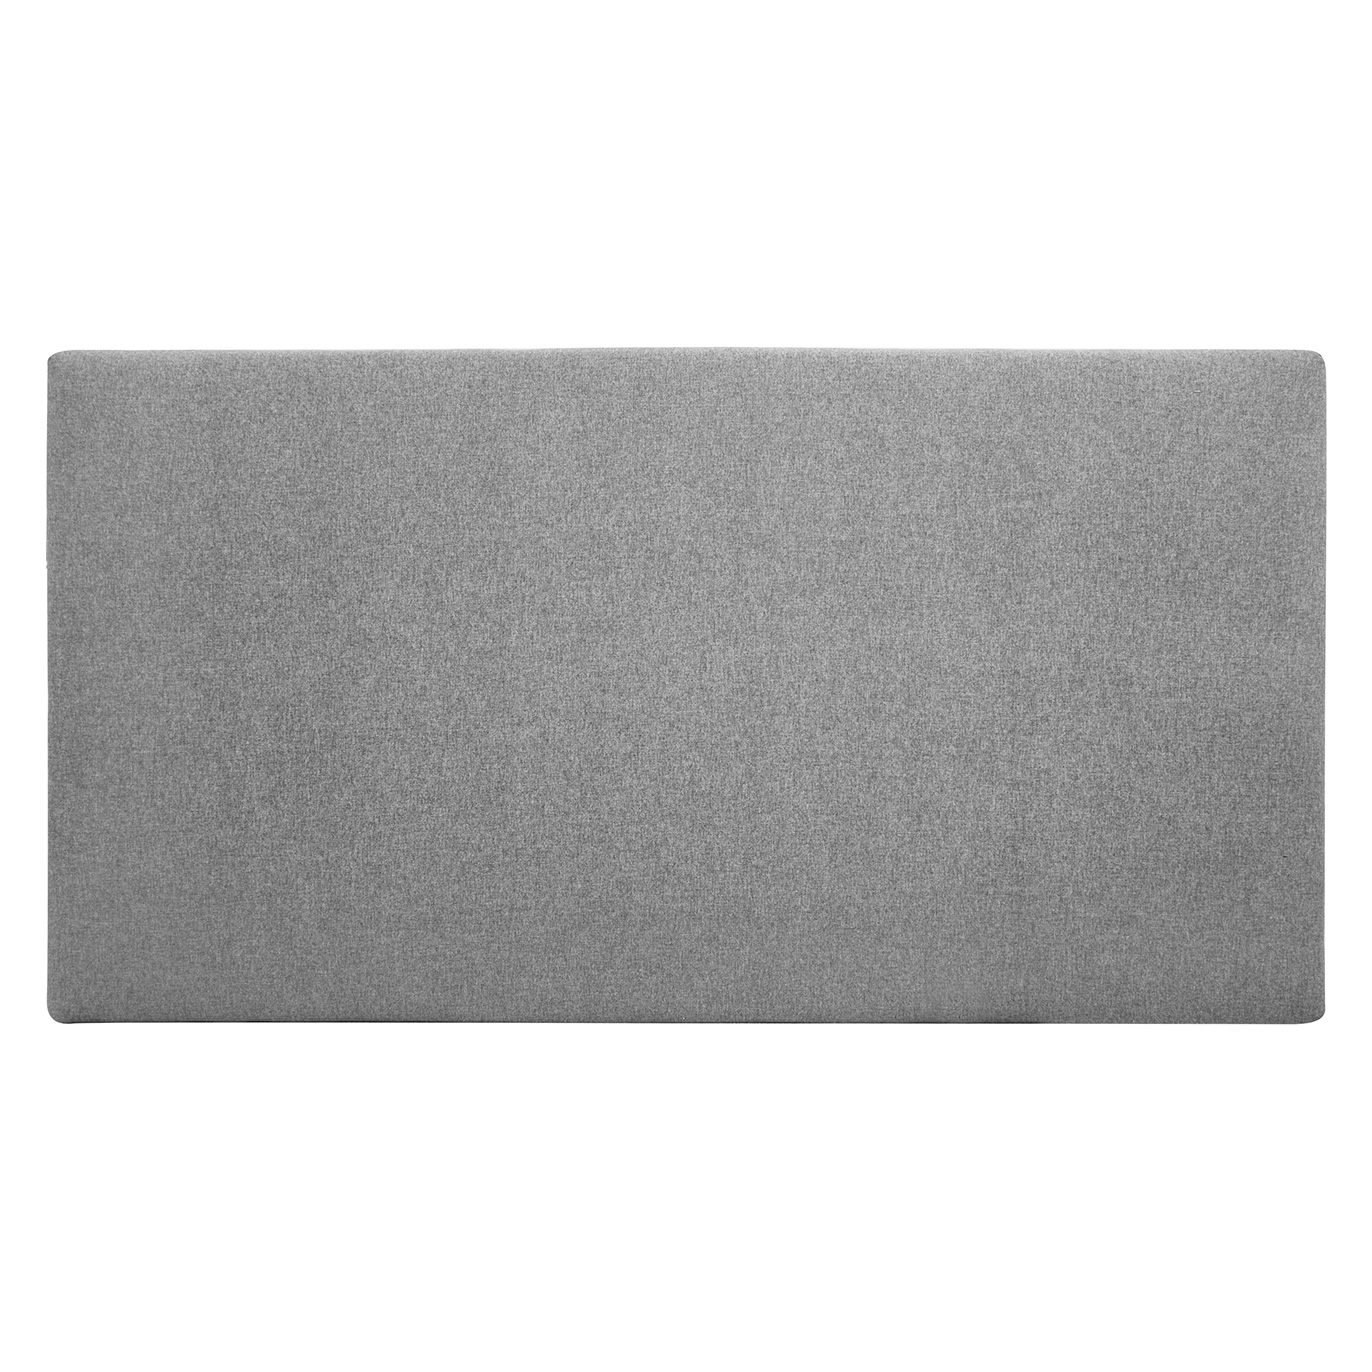 Tête de lit polyester lisse couleur grise 90x80cm